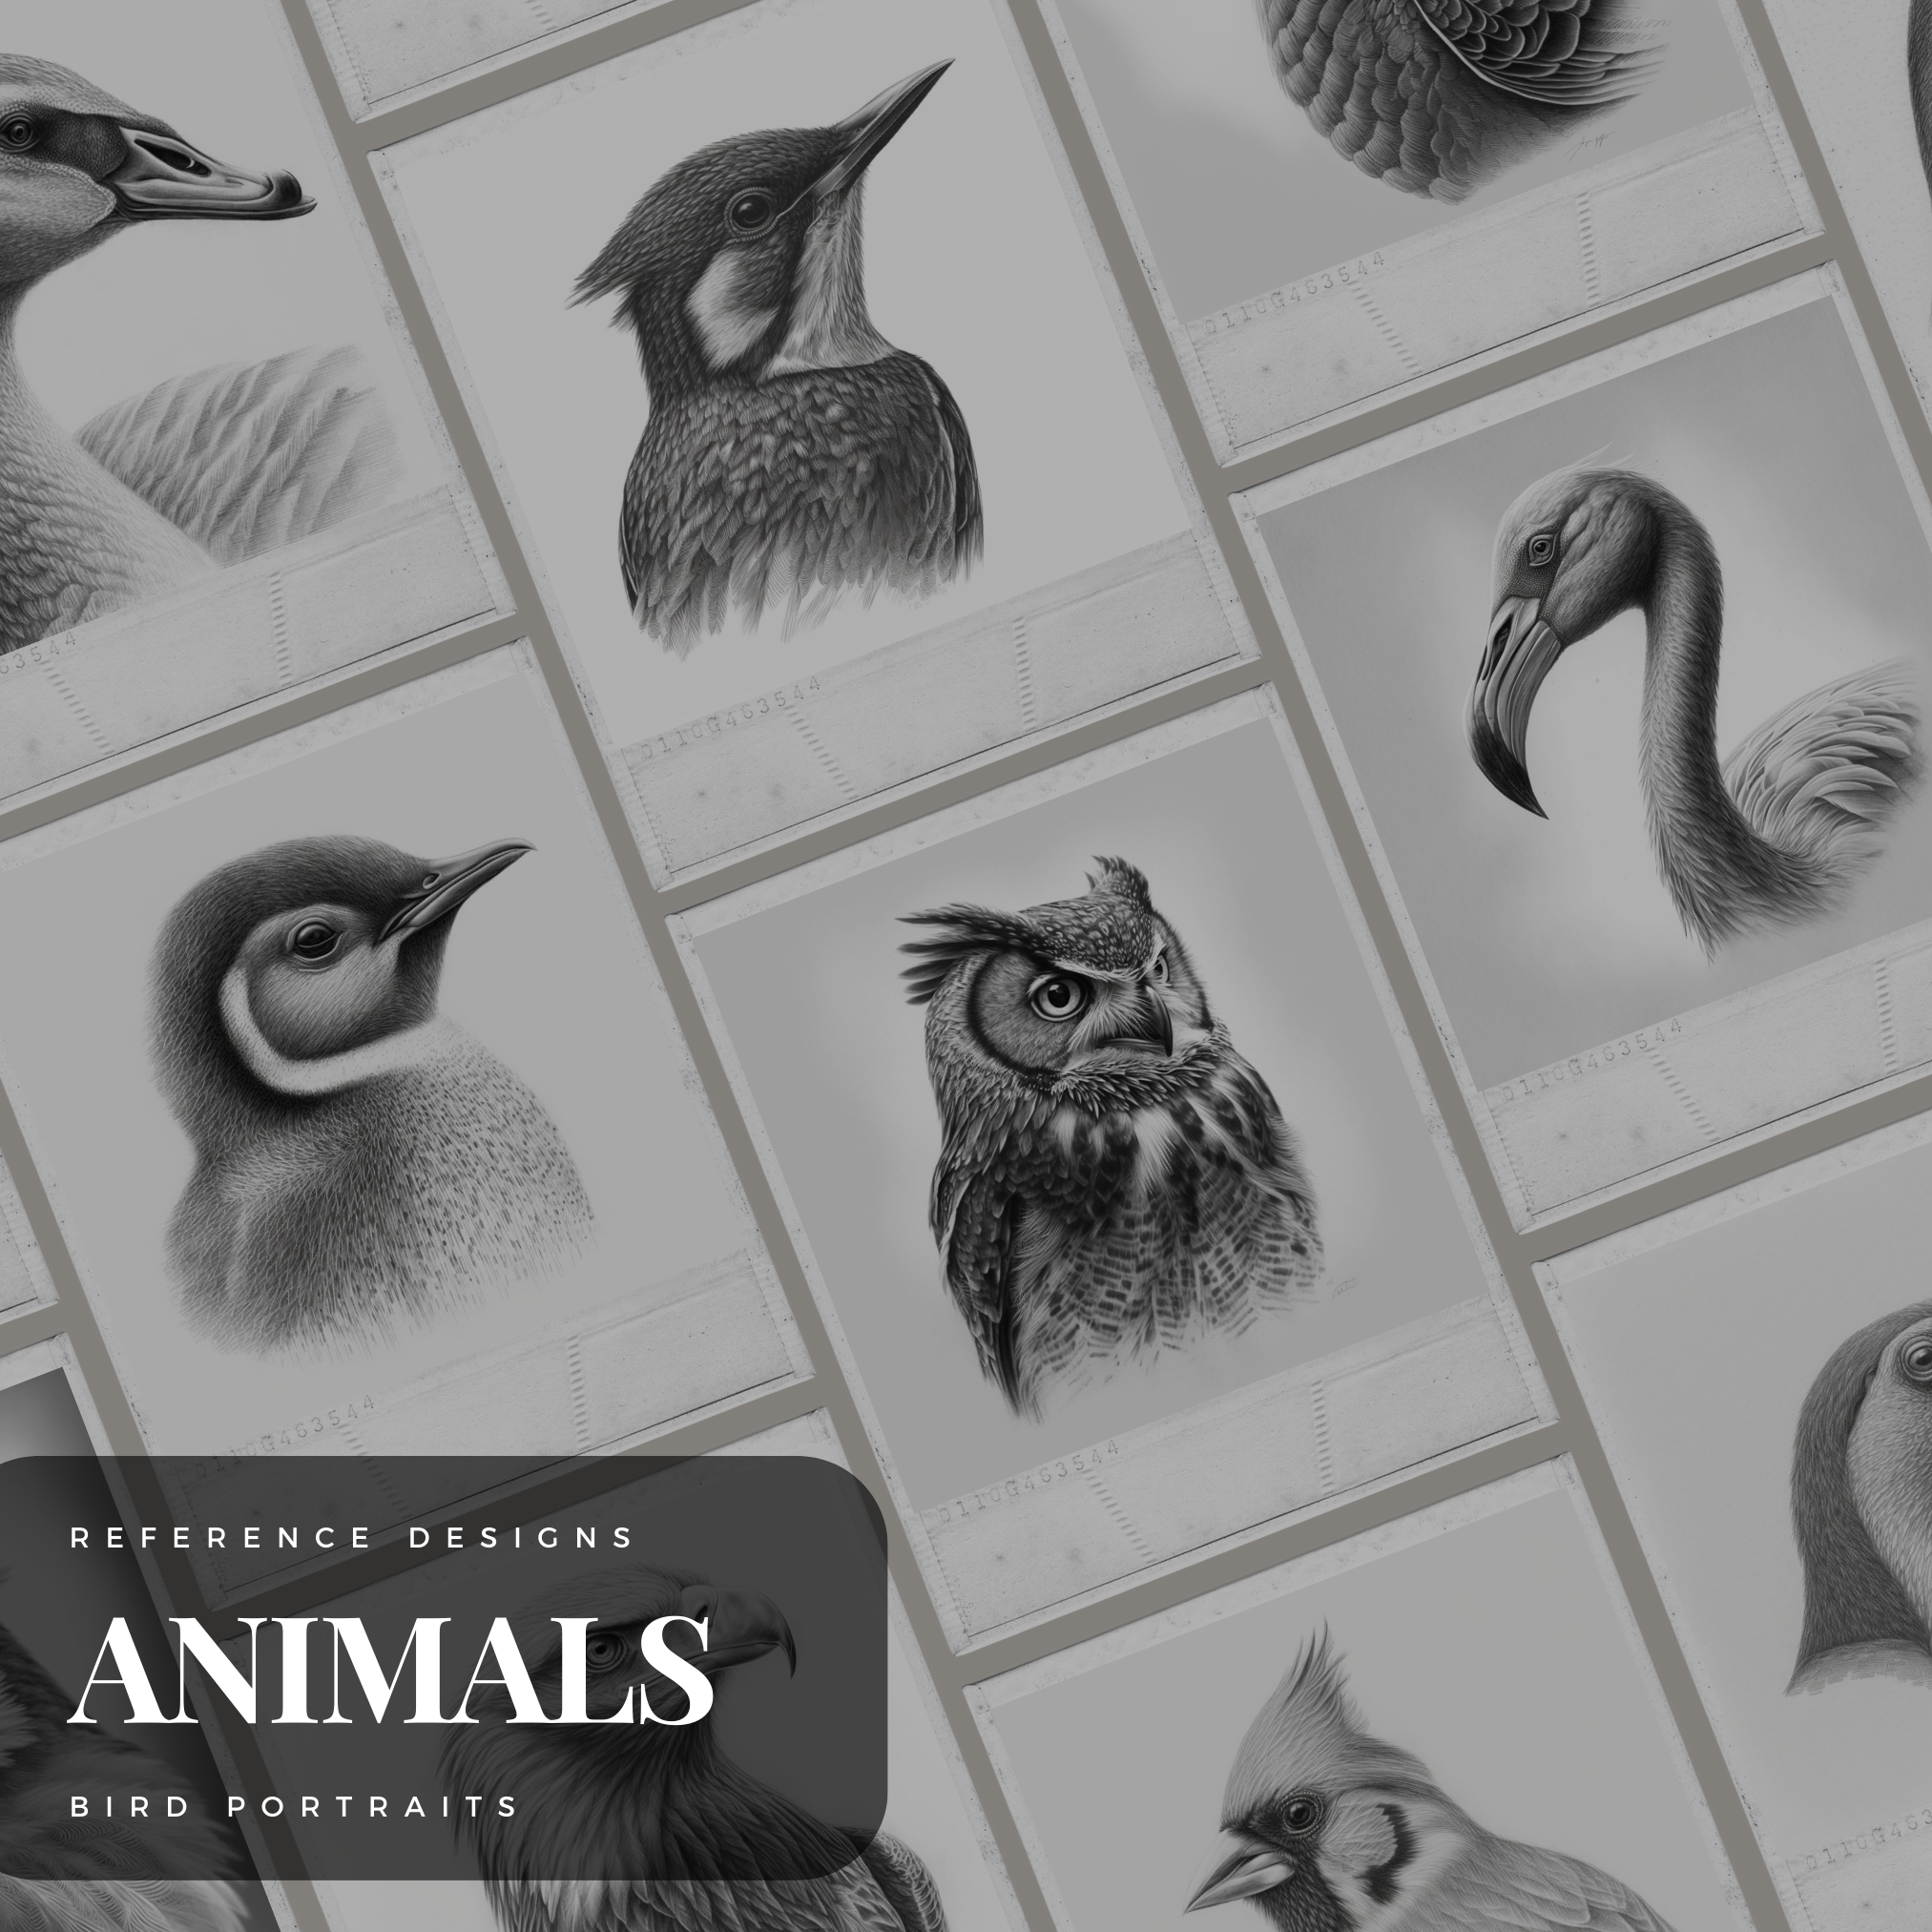 Birds Digital Reference Design Collection: 100 Procreate & Sketchbook Images